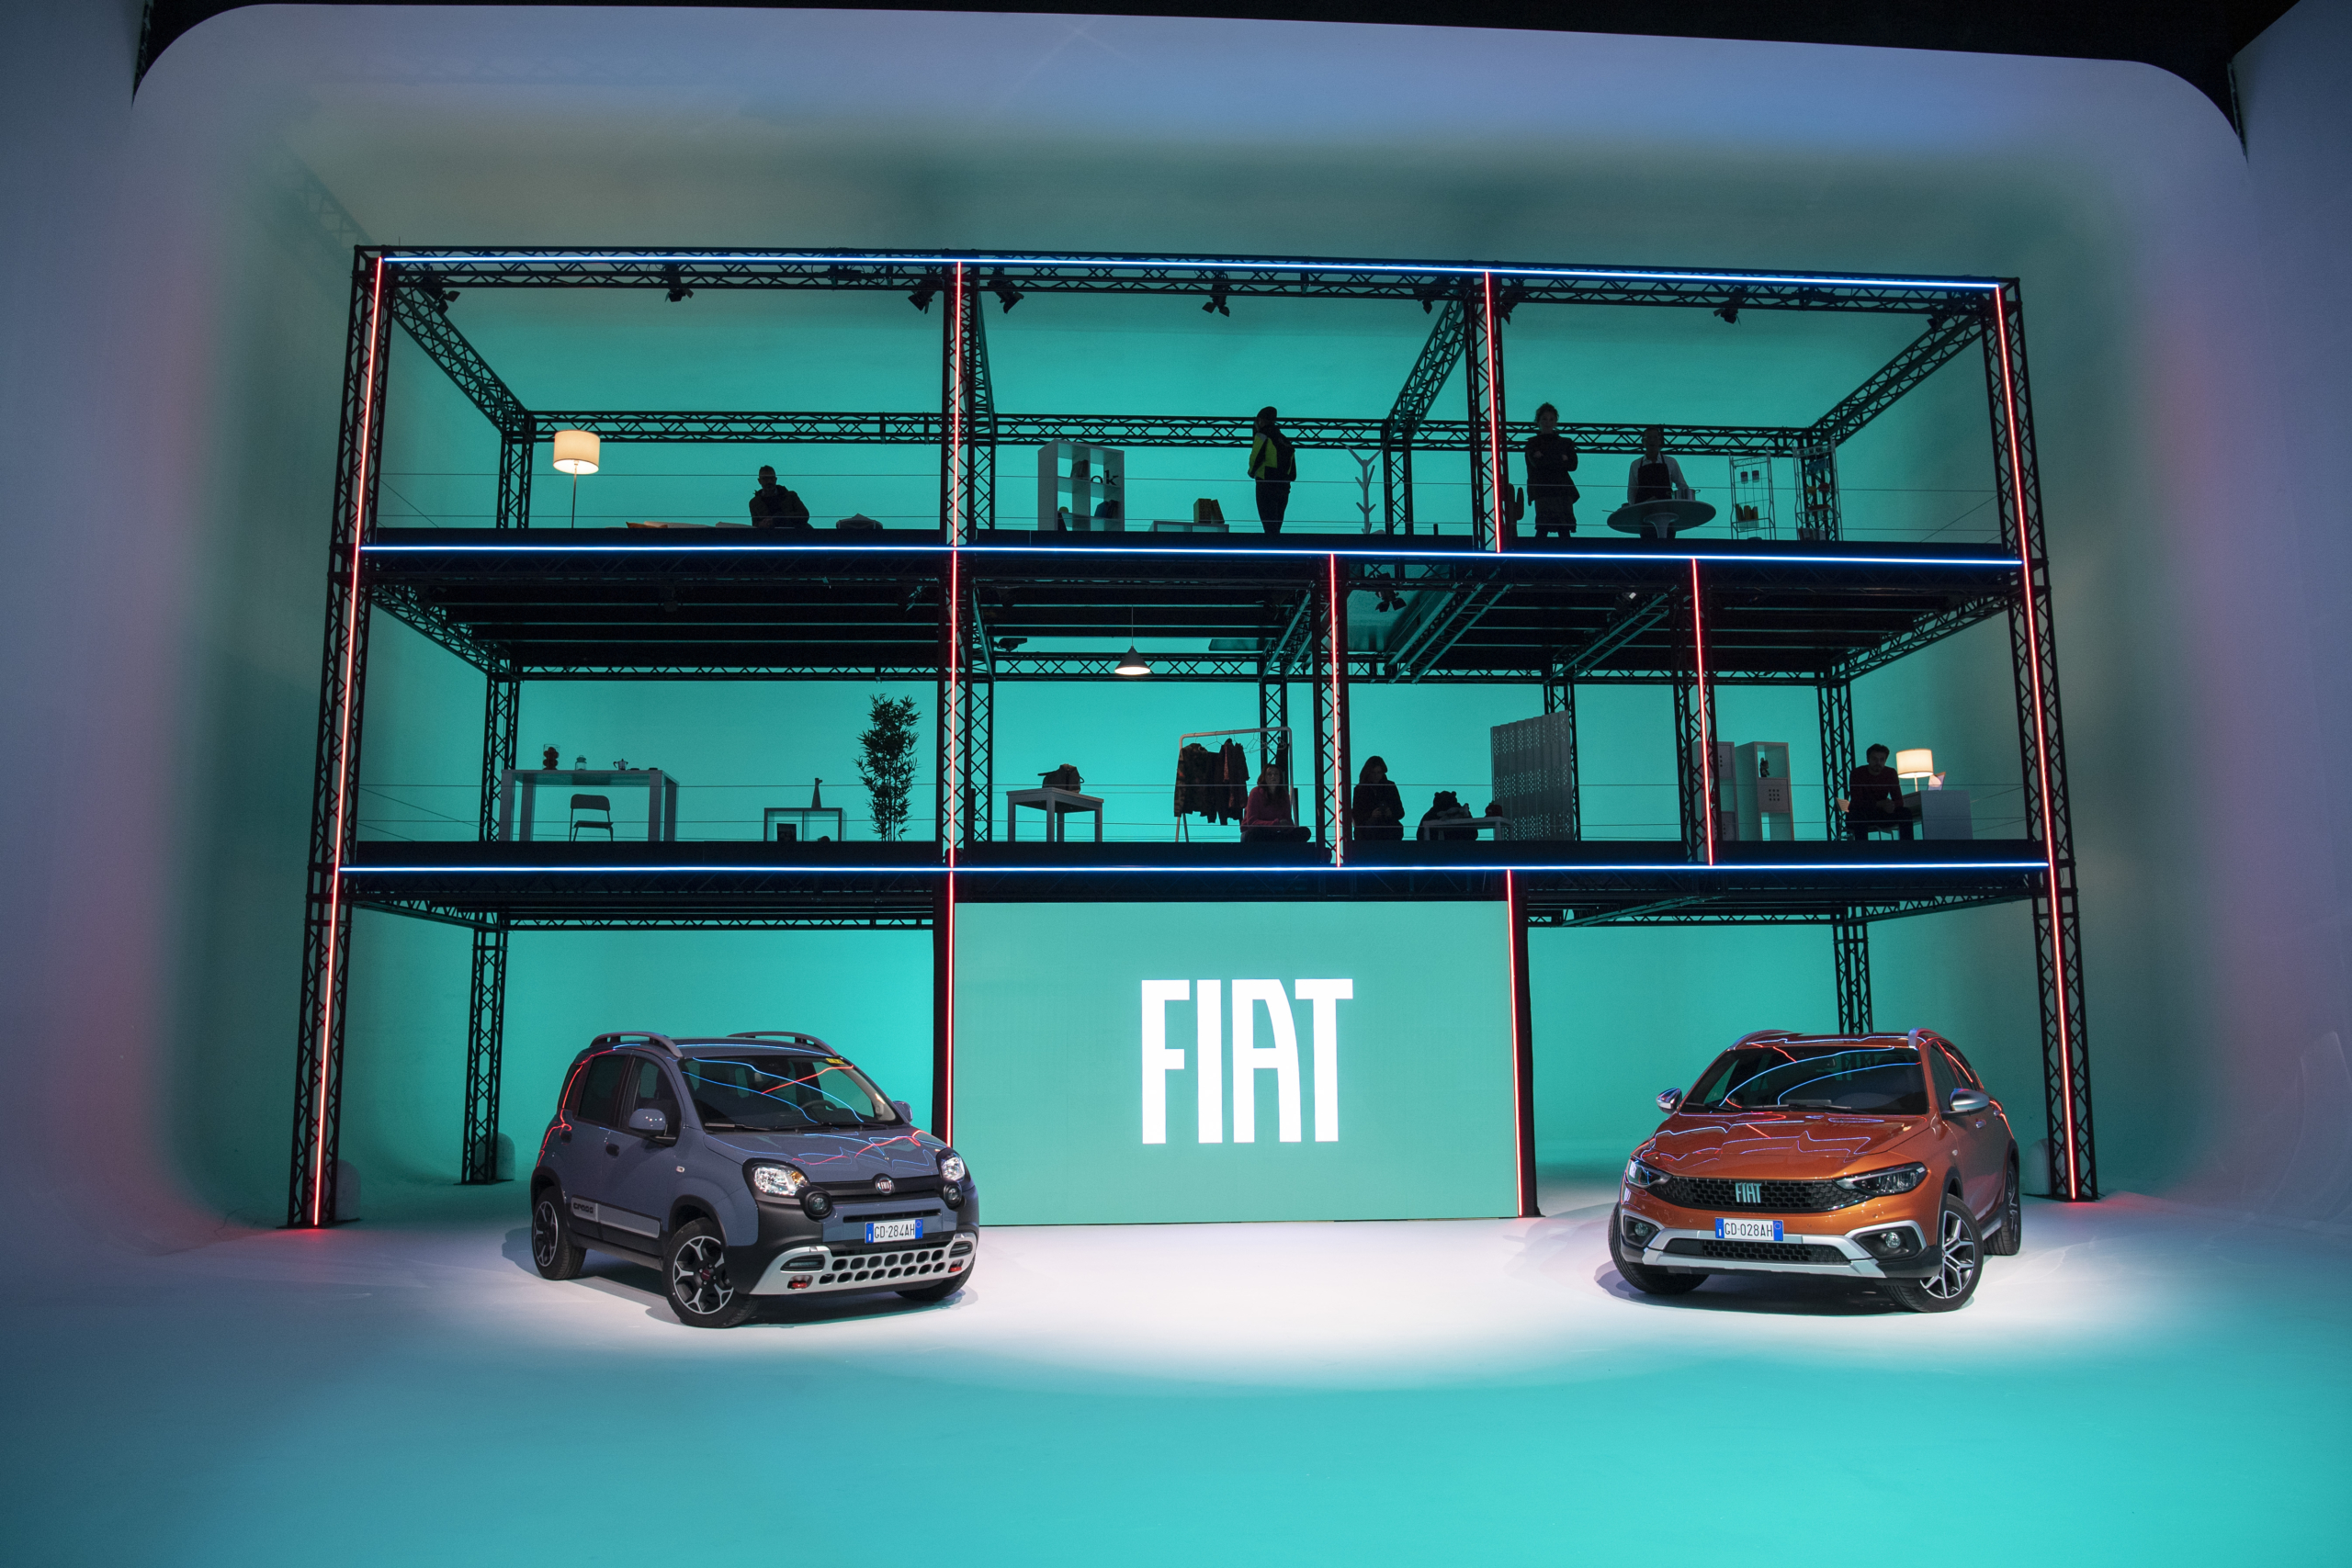 Baureihen Fiat Panda und Fiat Tipo komplett erneuert, zusätzlich neue Varianten Fiat Panda Sport und Fiat Tipo Cross